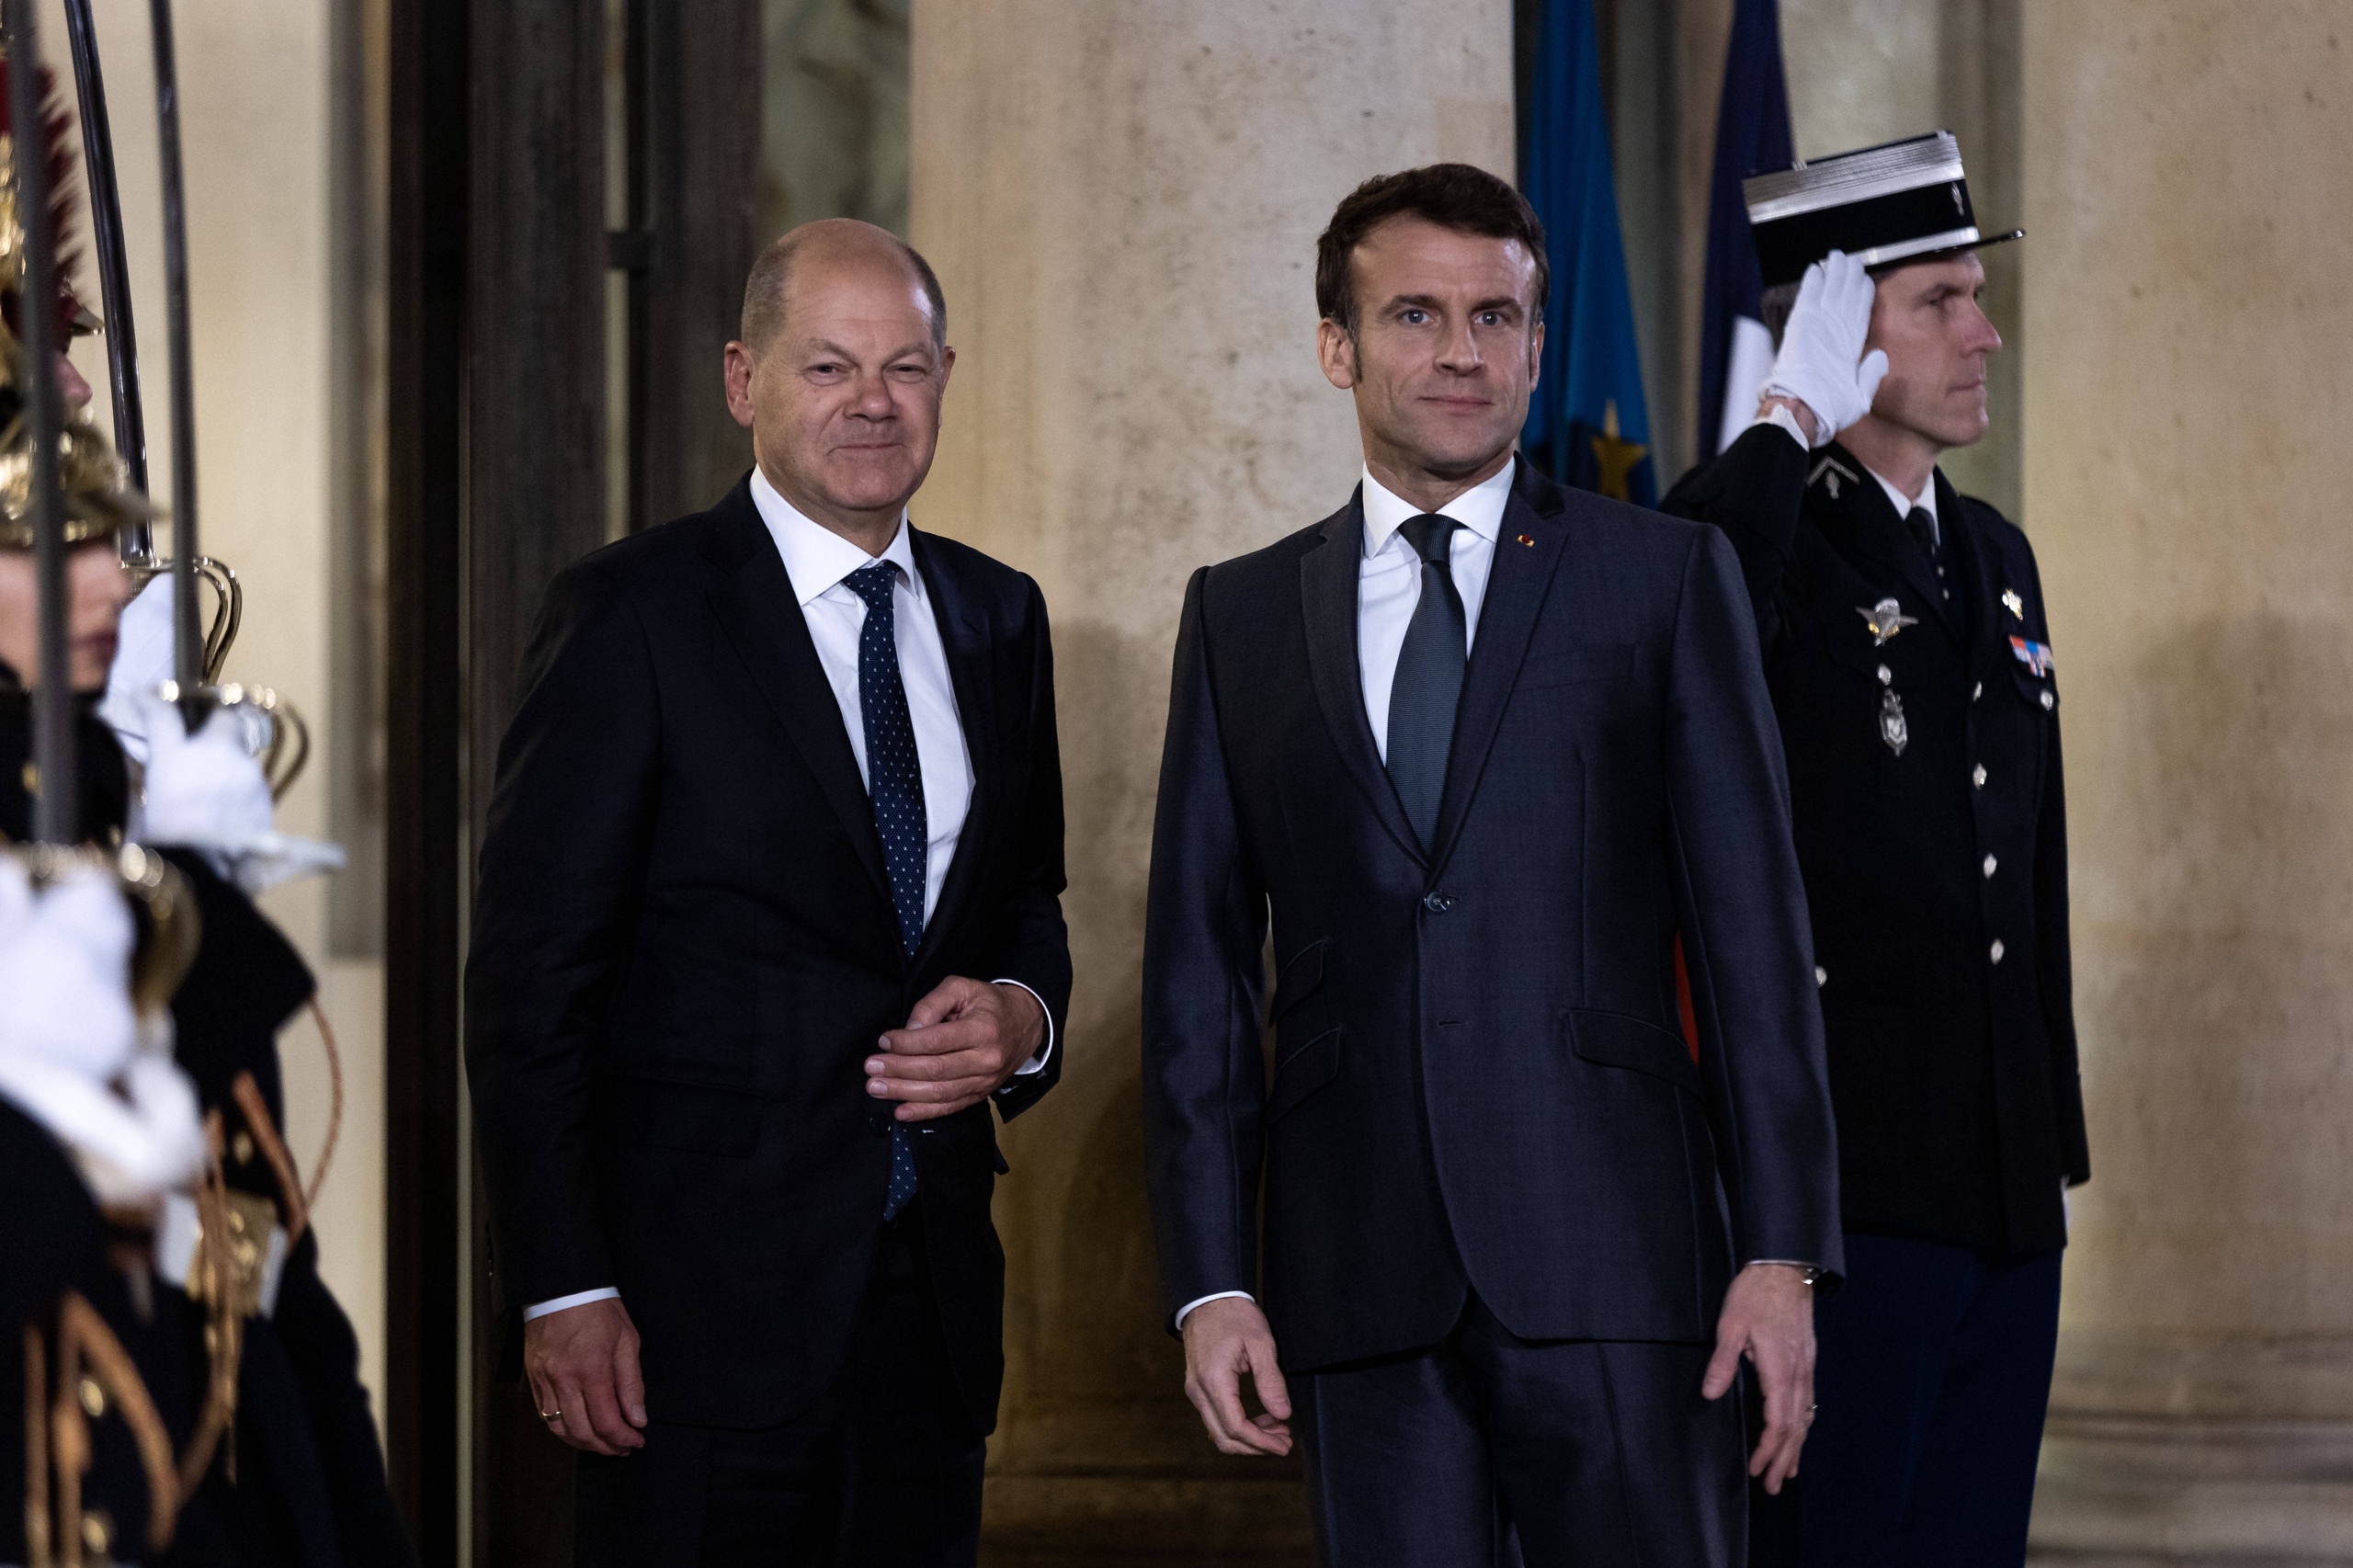 De Franse president Emmanuel Macron en de Duitse bondskanselier Olaf Scholz ontmoeten elkaar vandaag in Brussel om te praten over de klimaatplannen. Duitsland en Frankrijk liggen momenteel met elkaar overhoop over het aanscherpen van het Europese energie-en klimaatbeleid. Eerder werd overeenstemming bereikt over de rol van kernenergie en een ban op de verkoop van auto's die op fossiele brandstoffen, maar Duitsland ligt nu toch dwars.